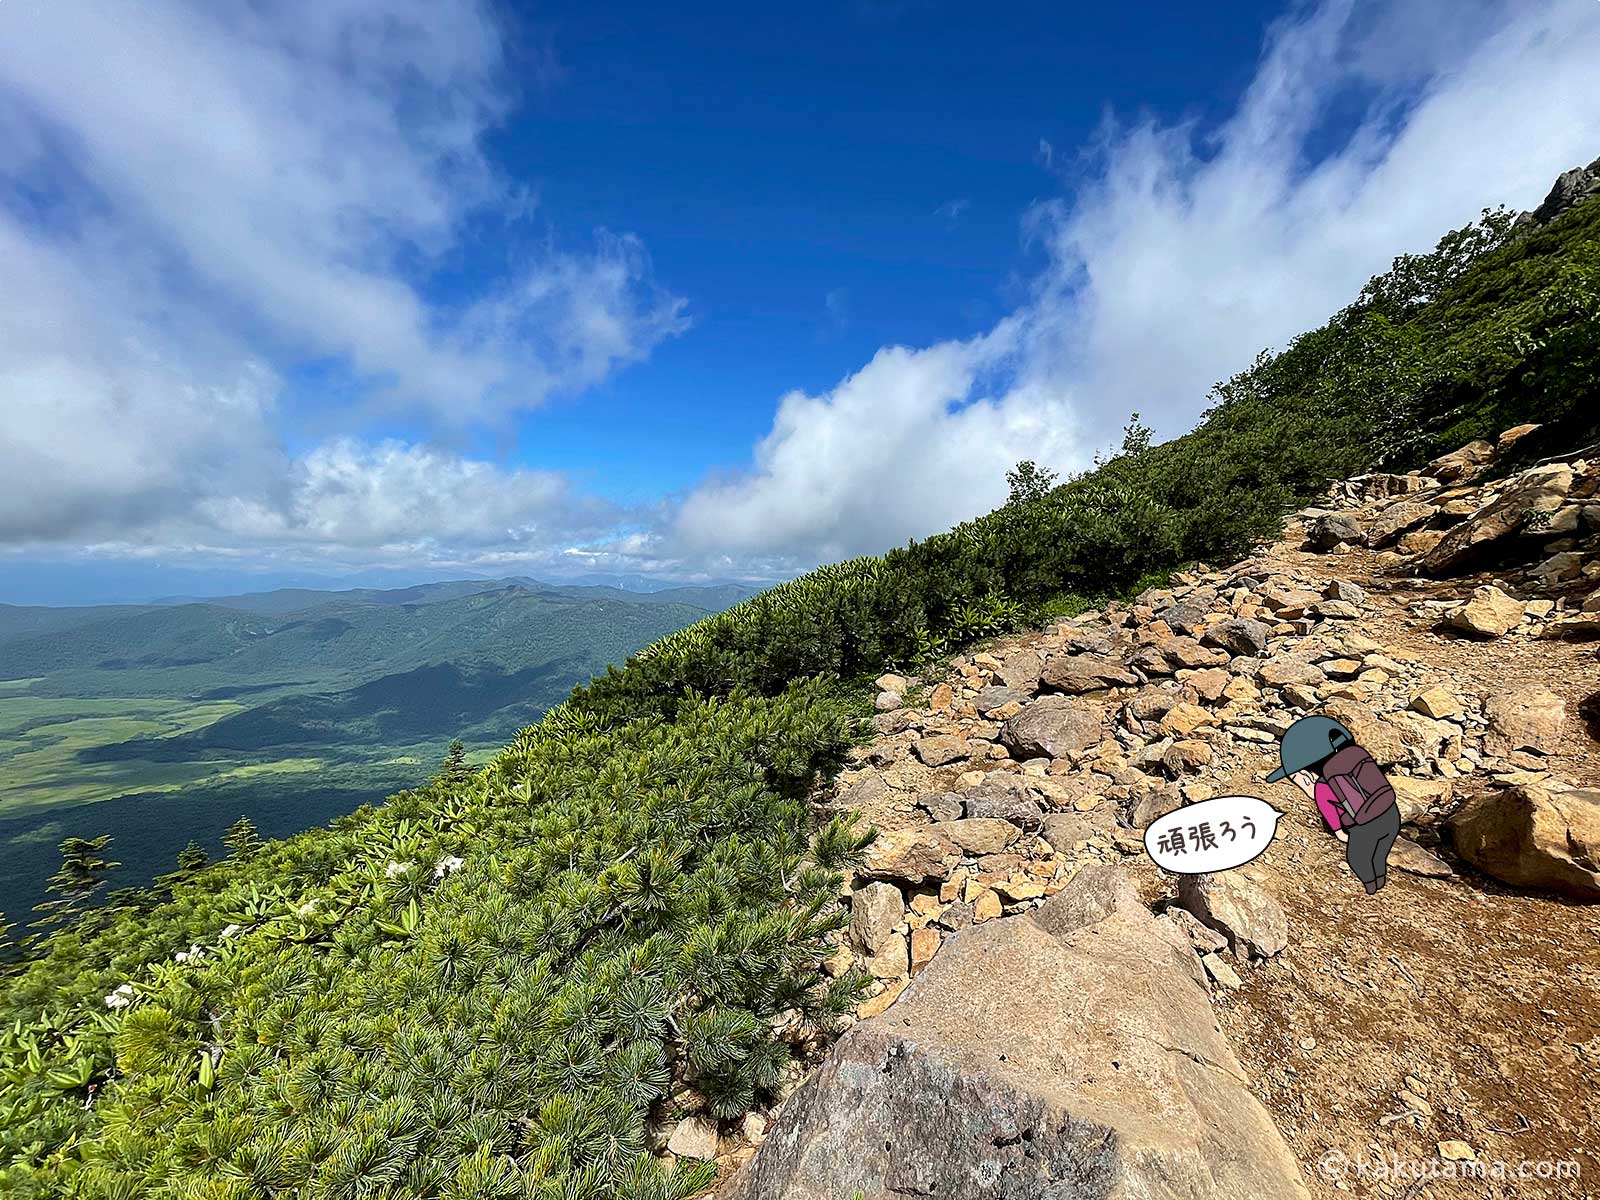 燧ヶ岳九合目からの眺めの写真と登山者のイラスト